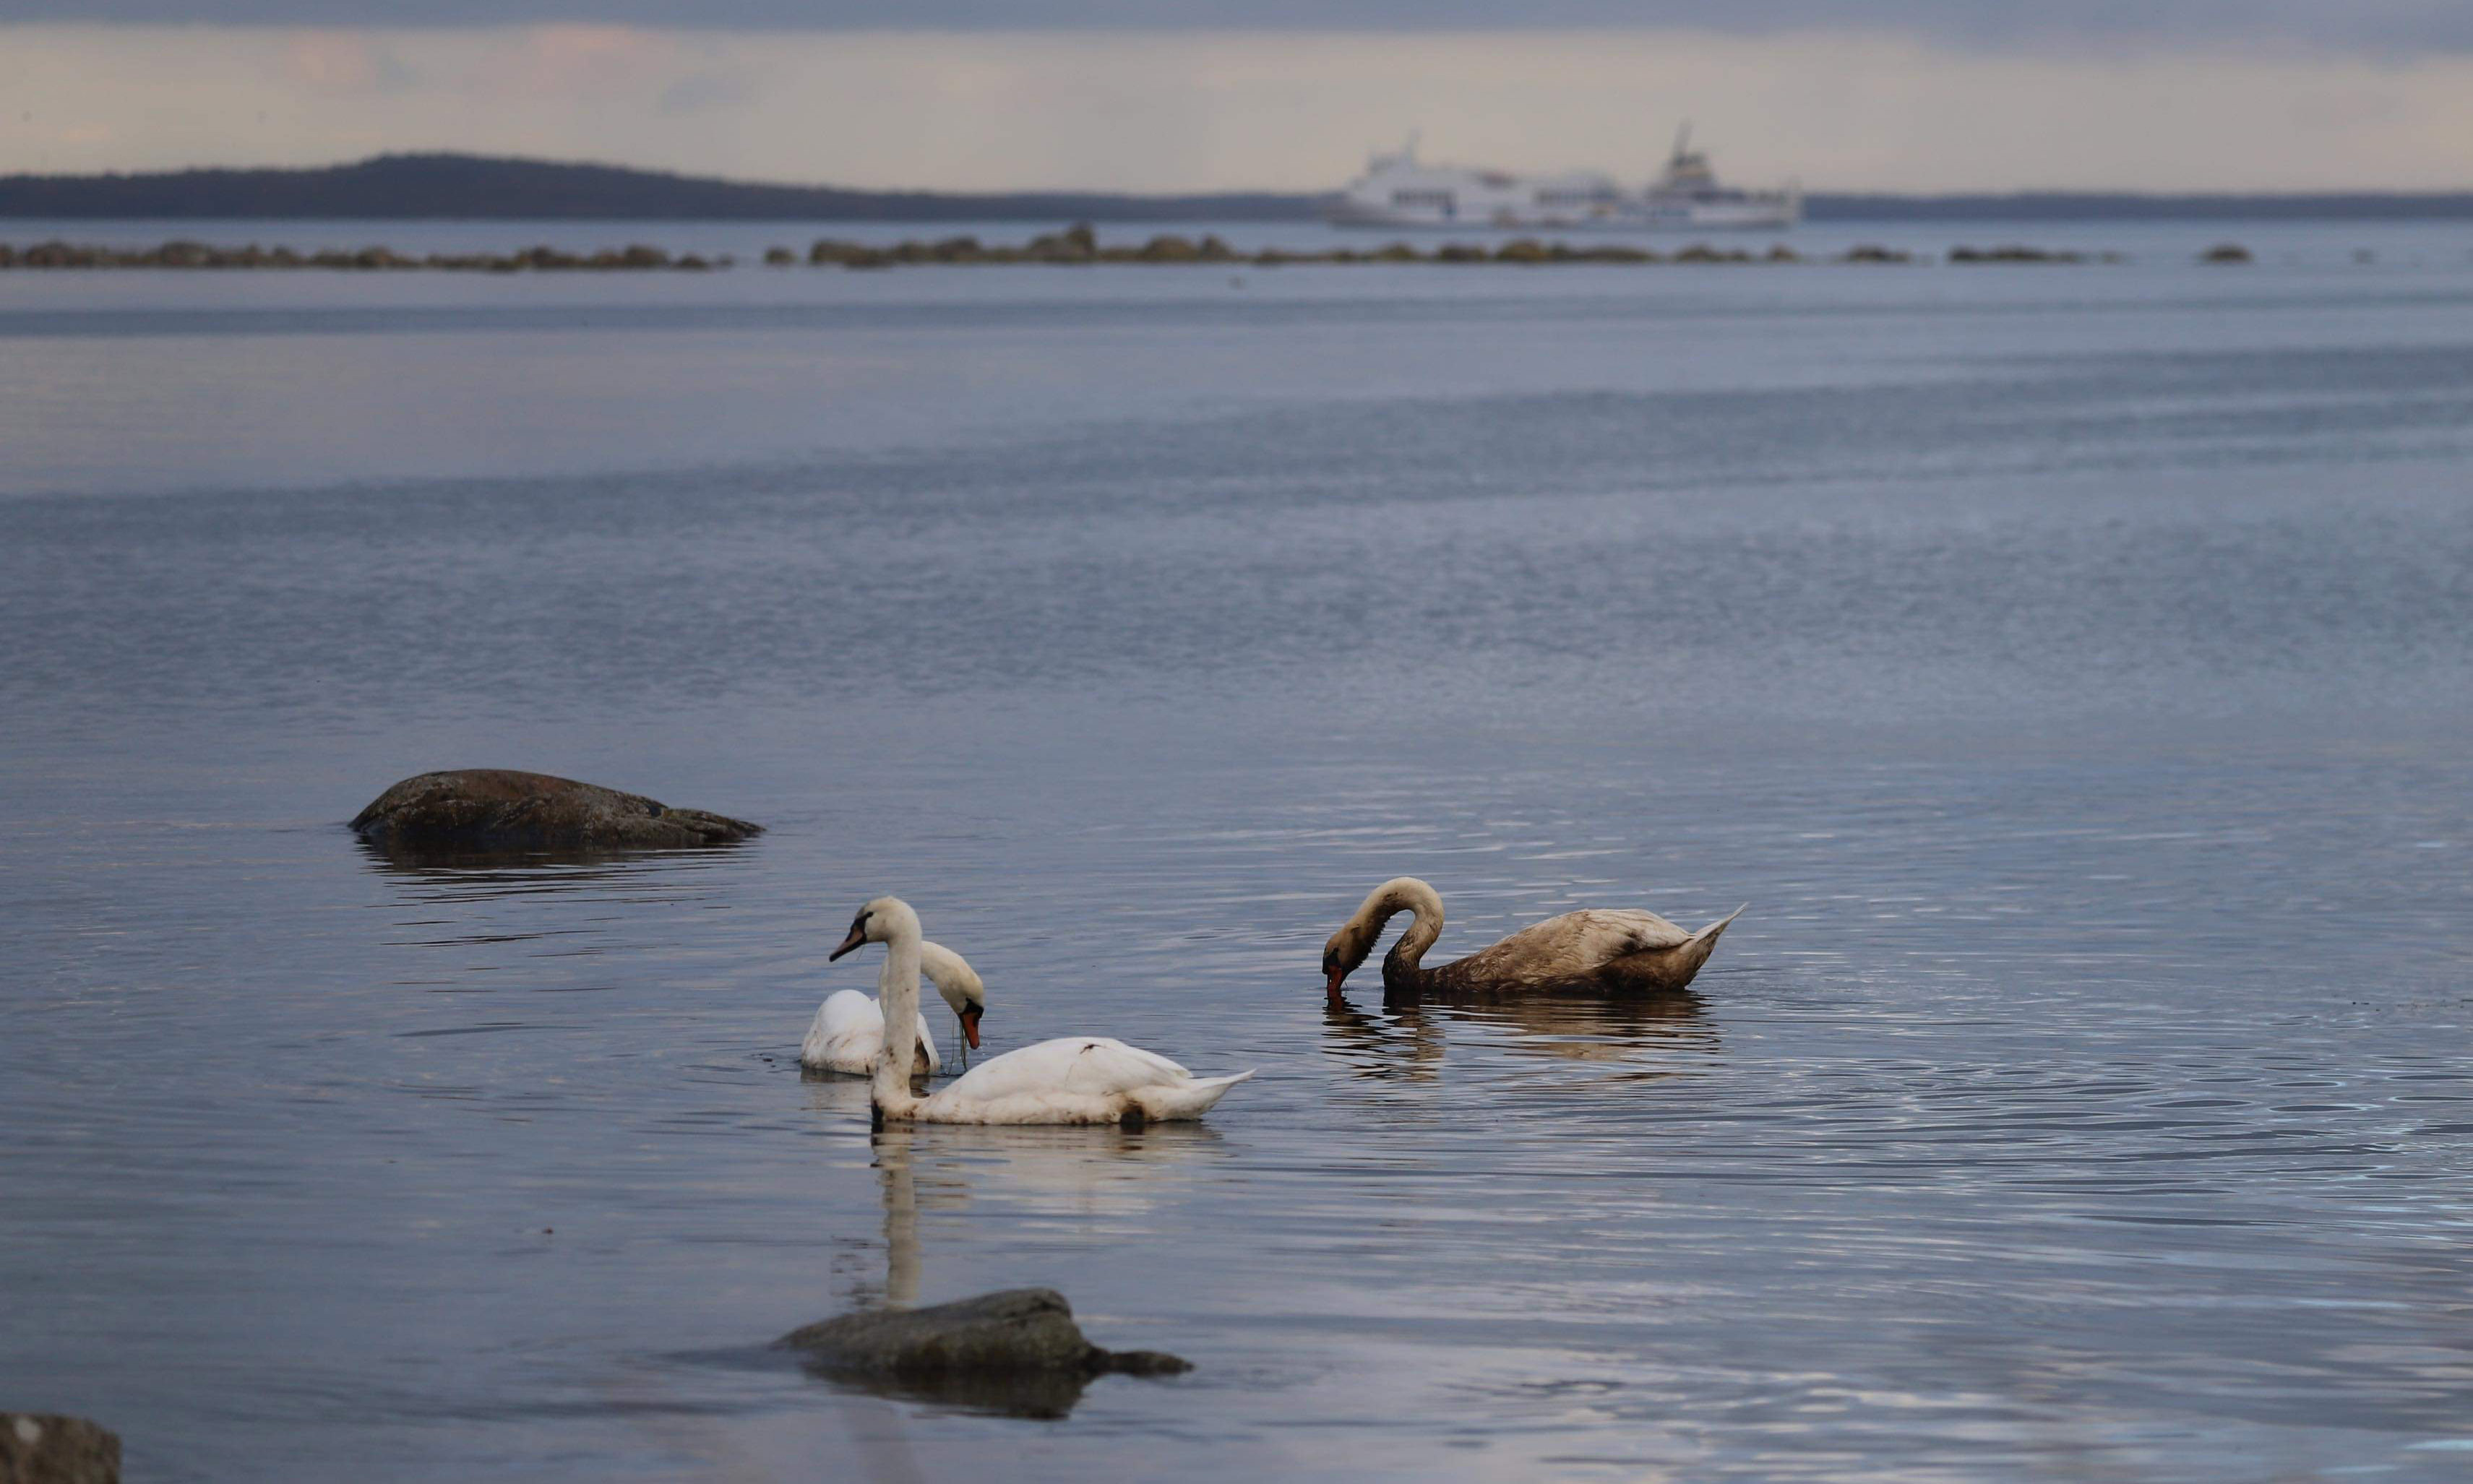 Tre oljeskadade svanar simmar i Pukaviksbukten med det grundstötta fartyget i bakgrunden